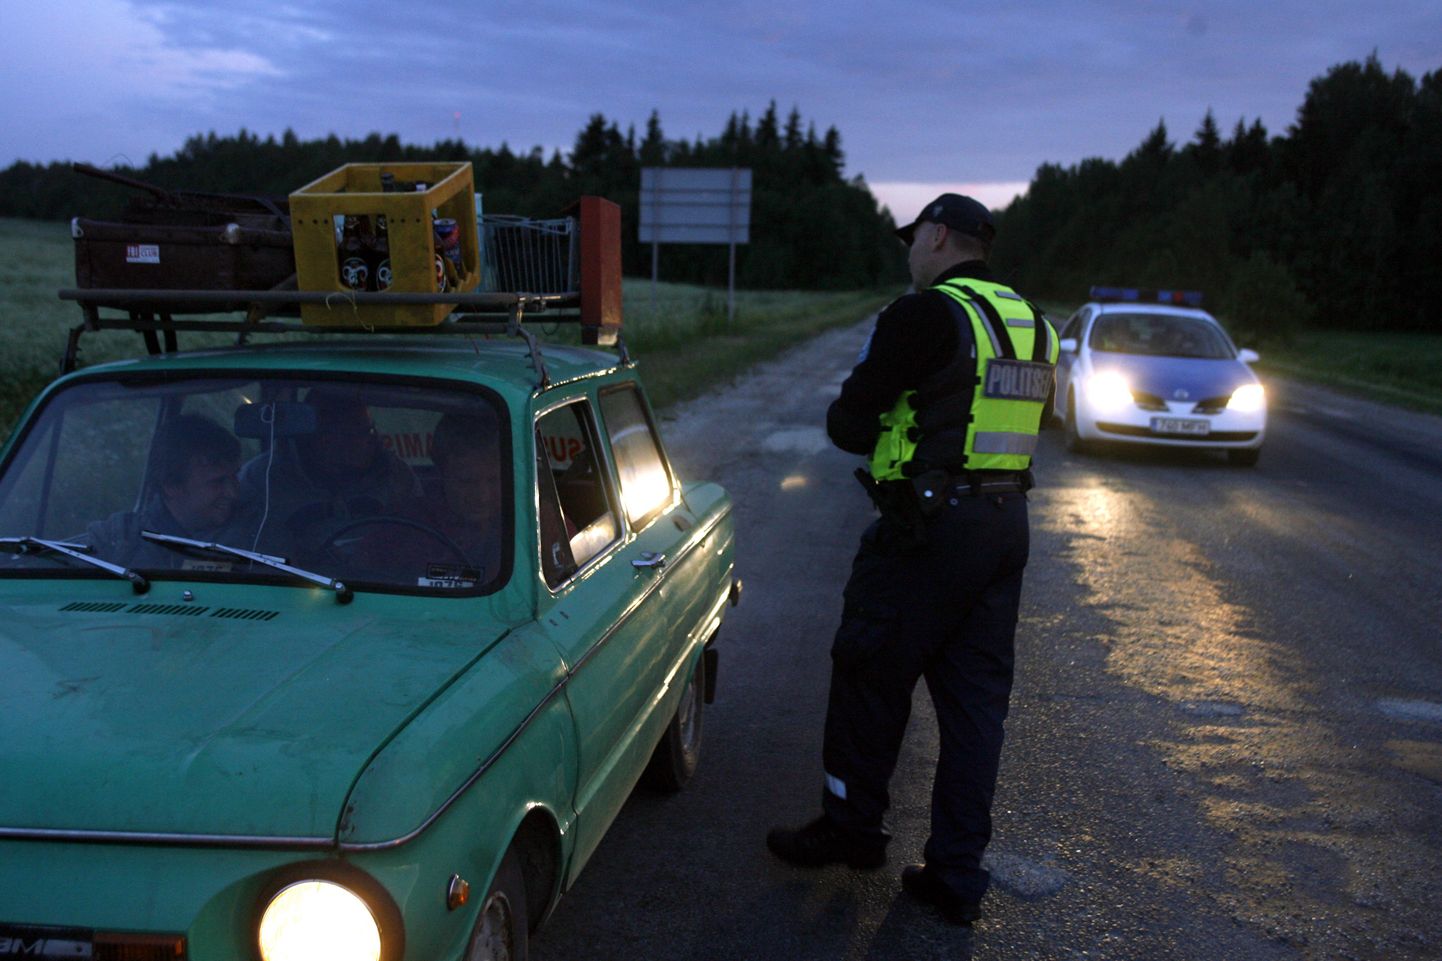 Politsei öise reidi ajal alkoholijoovet ning liikluskiirust kontrollimas.